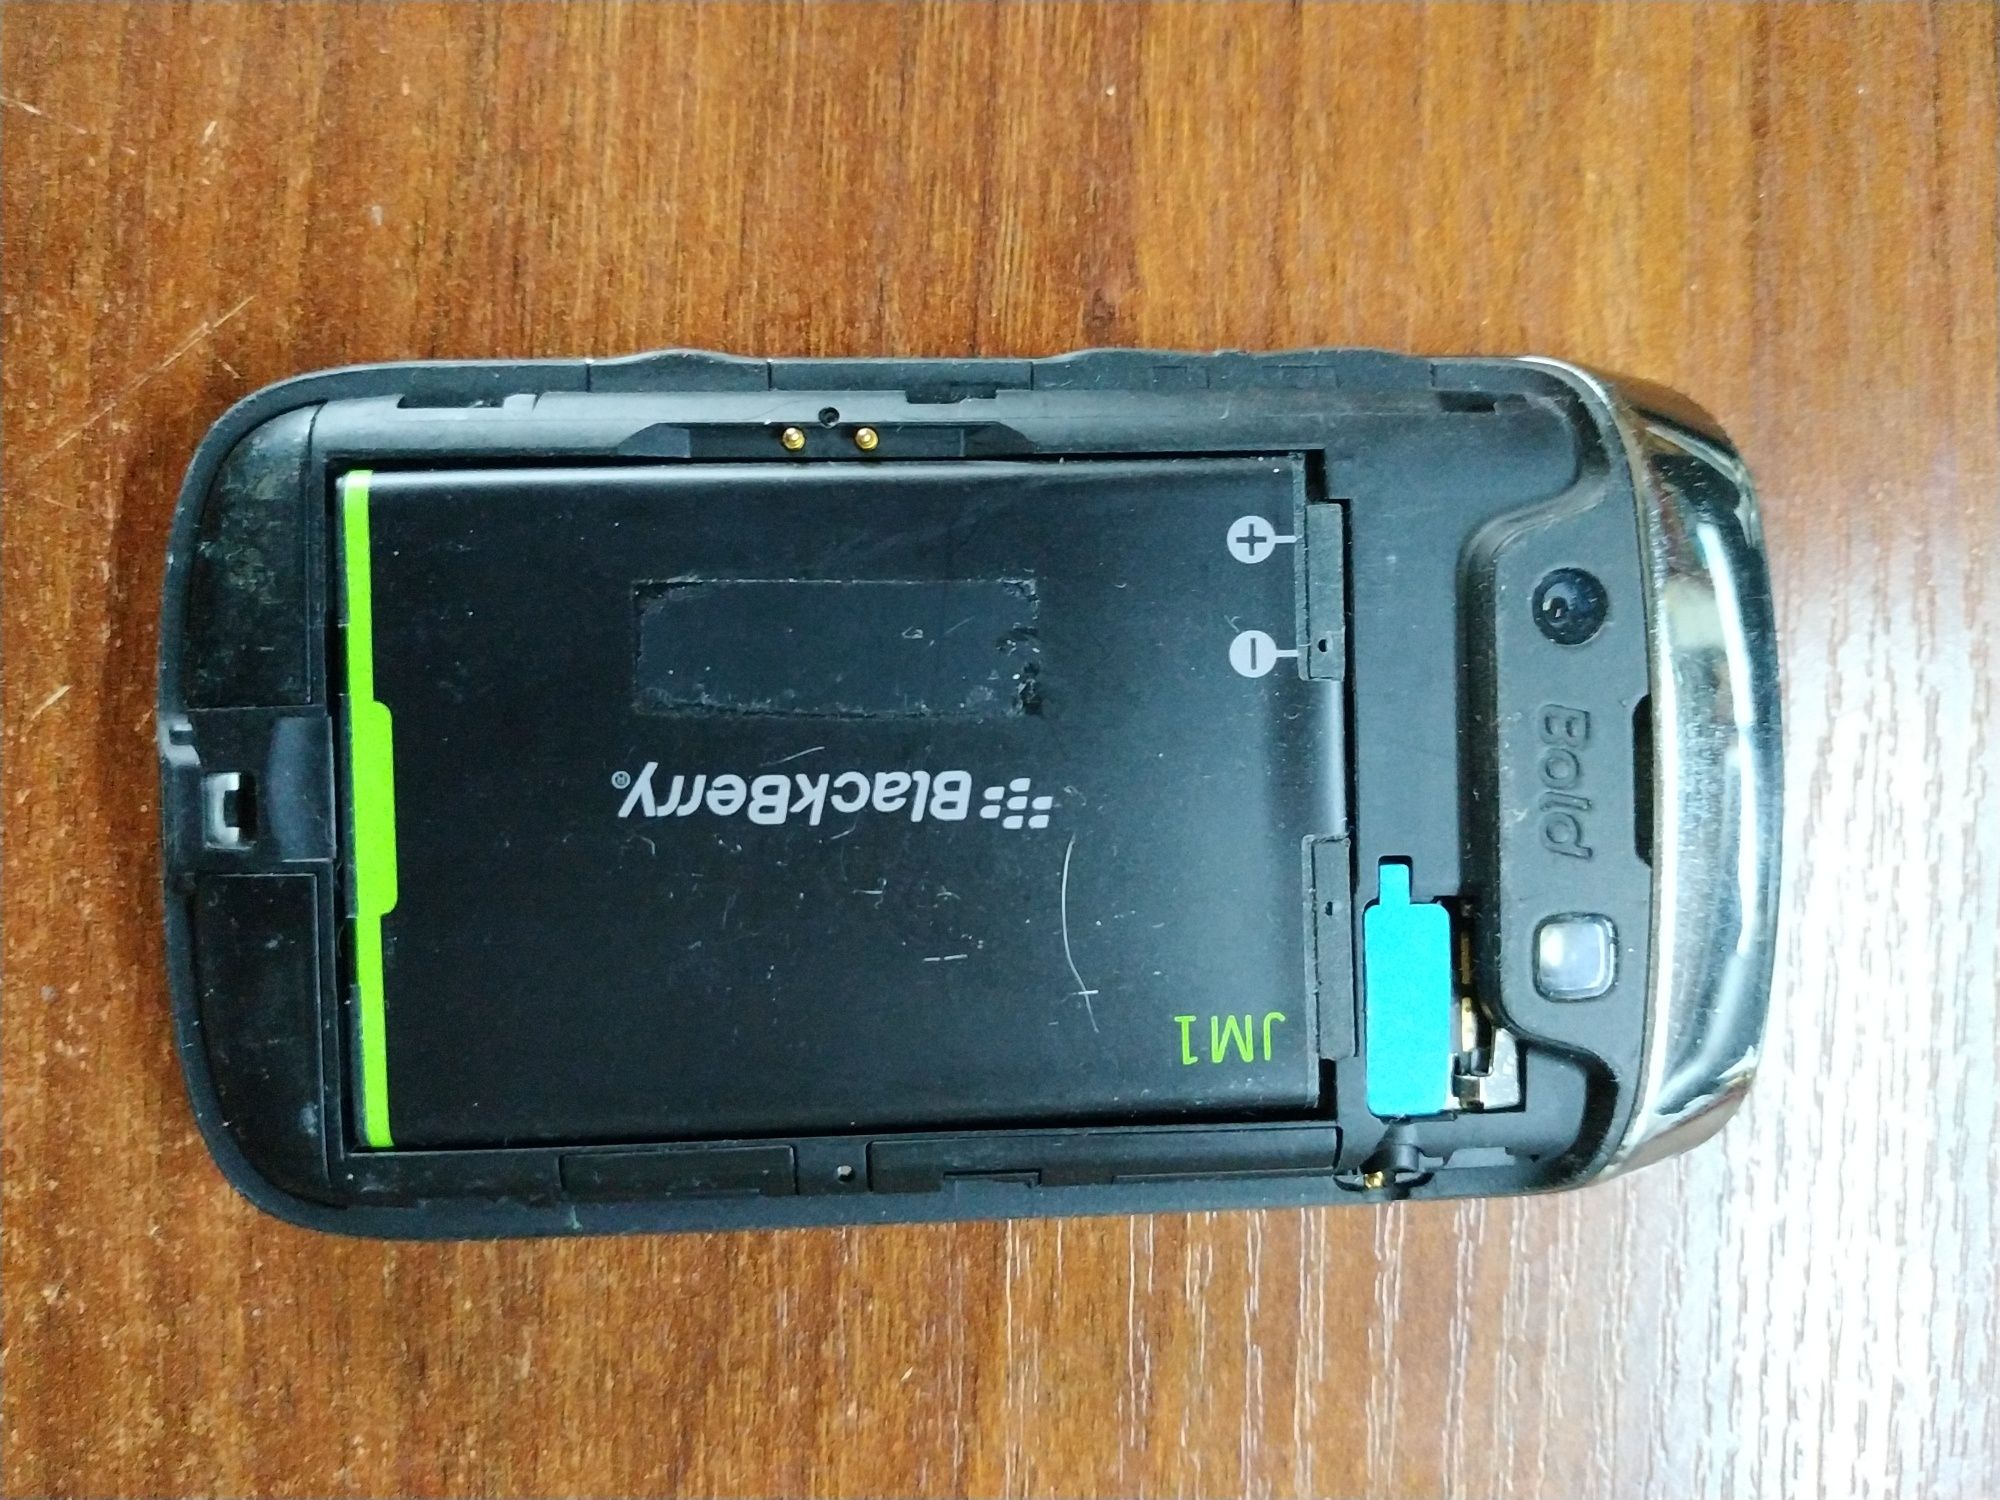 Телефон Blackberry 9790